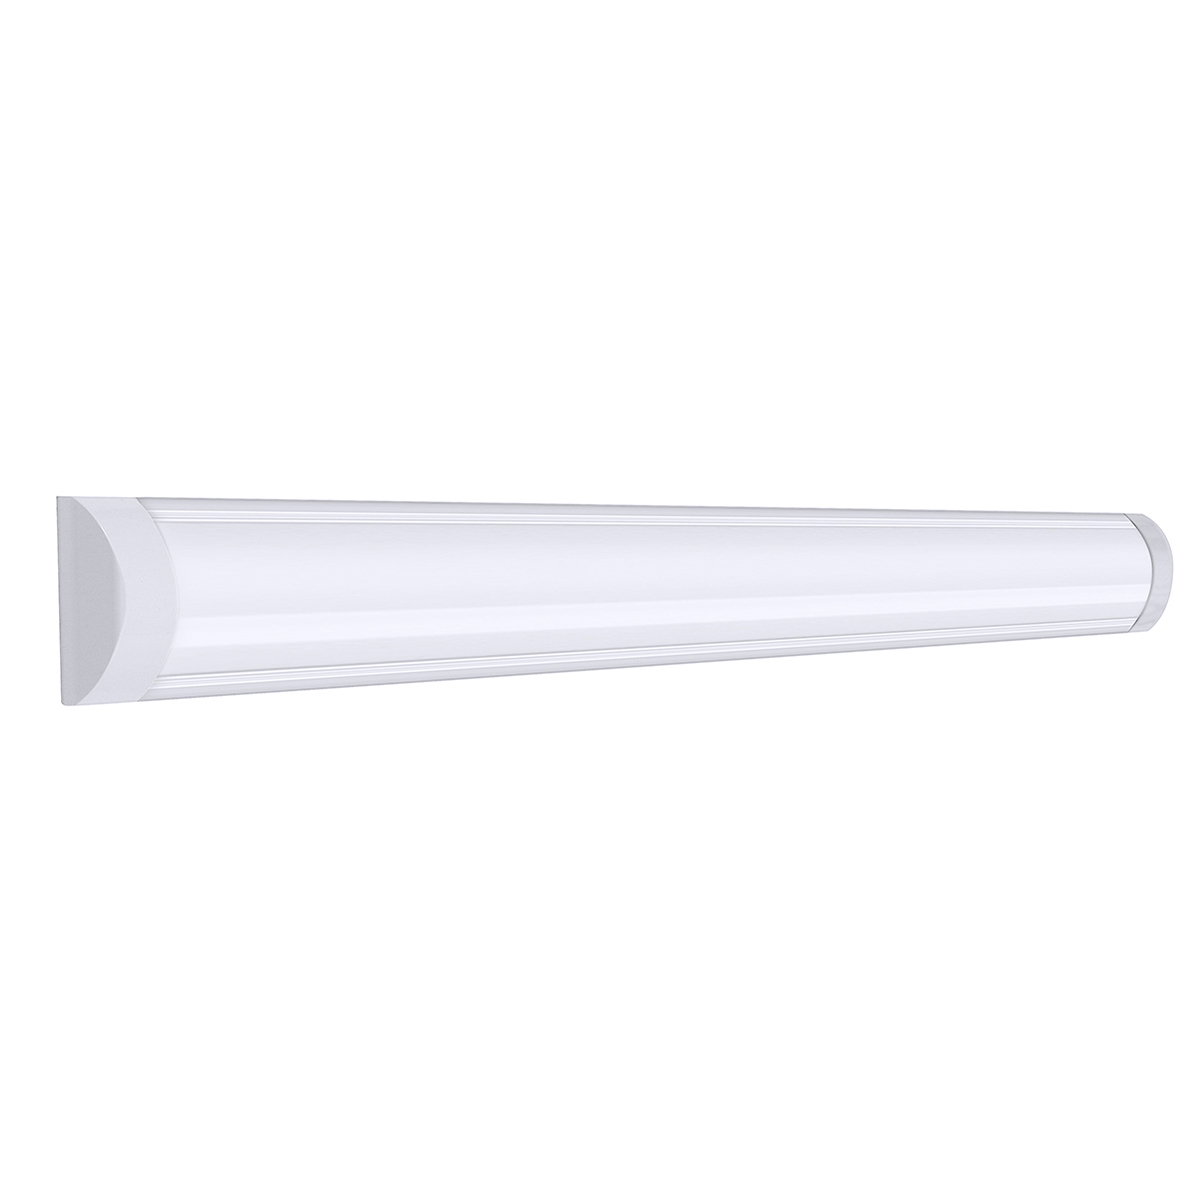 1Pcs-120cm-LED-Batten-Linear-Tube-Light-Fluorescent-Lamp-LED-Surface-Mount-Lights-1795377-7